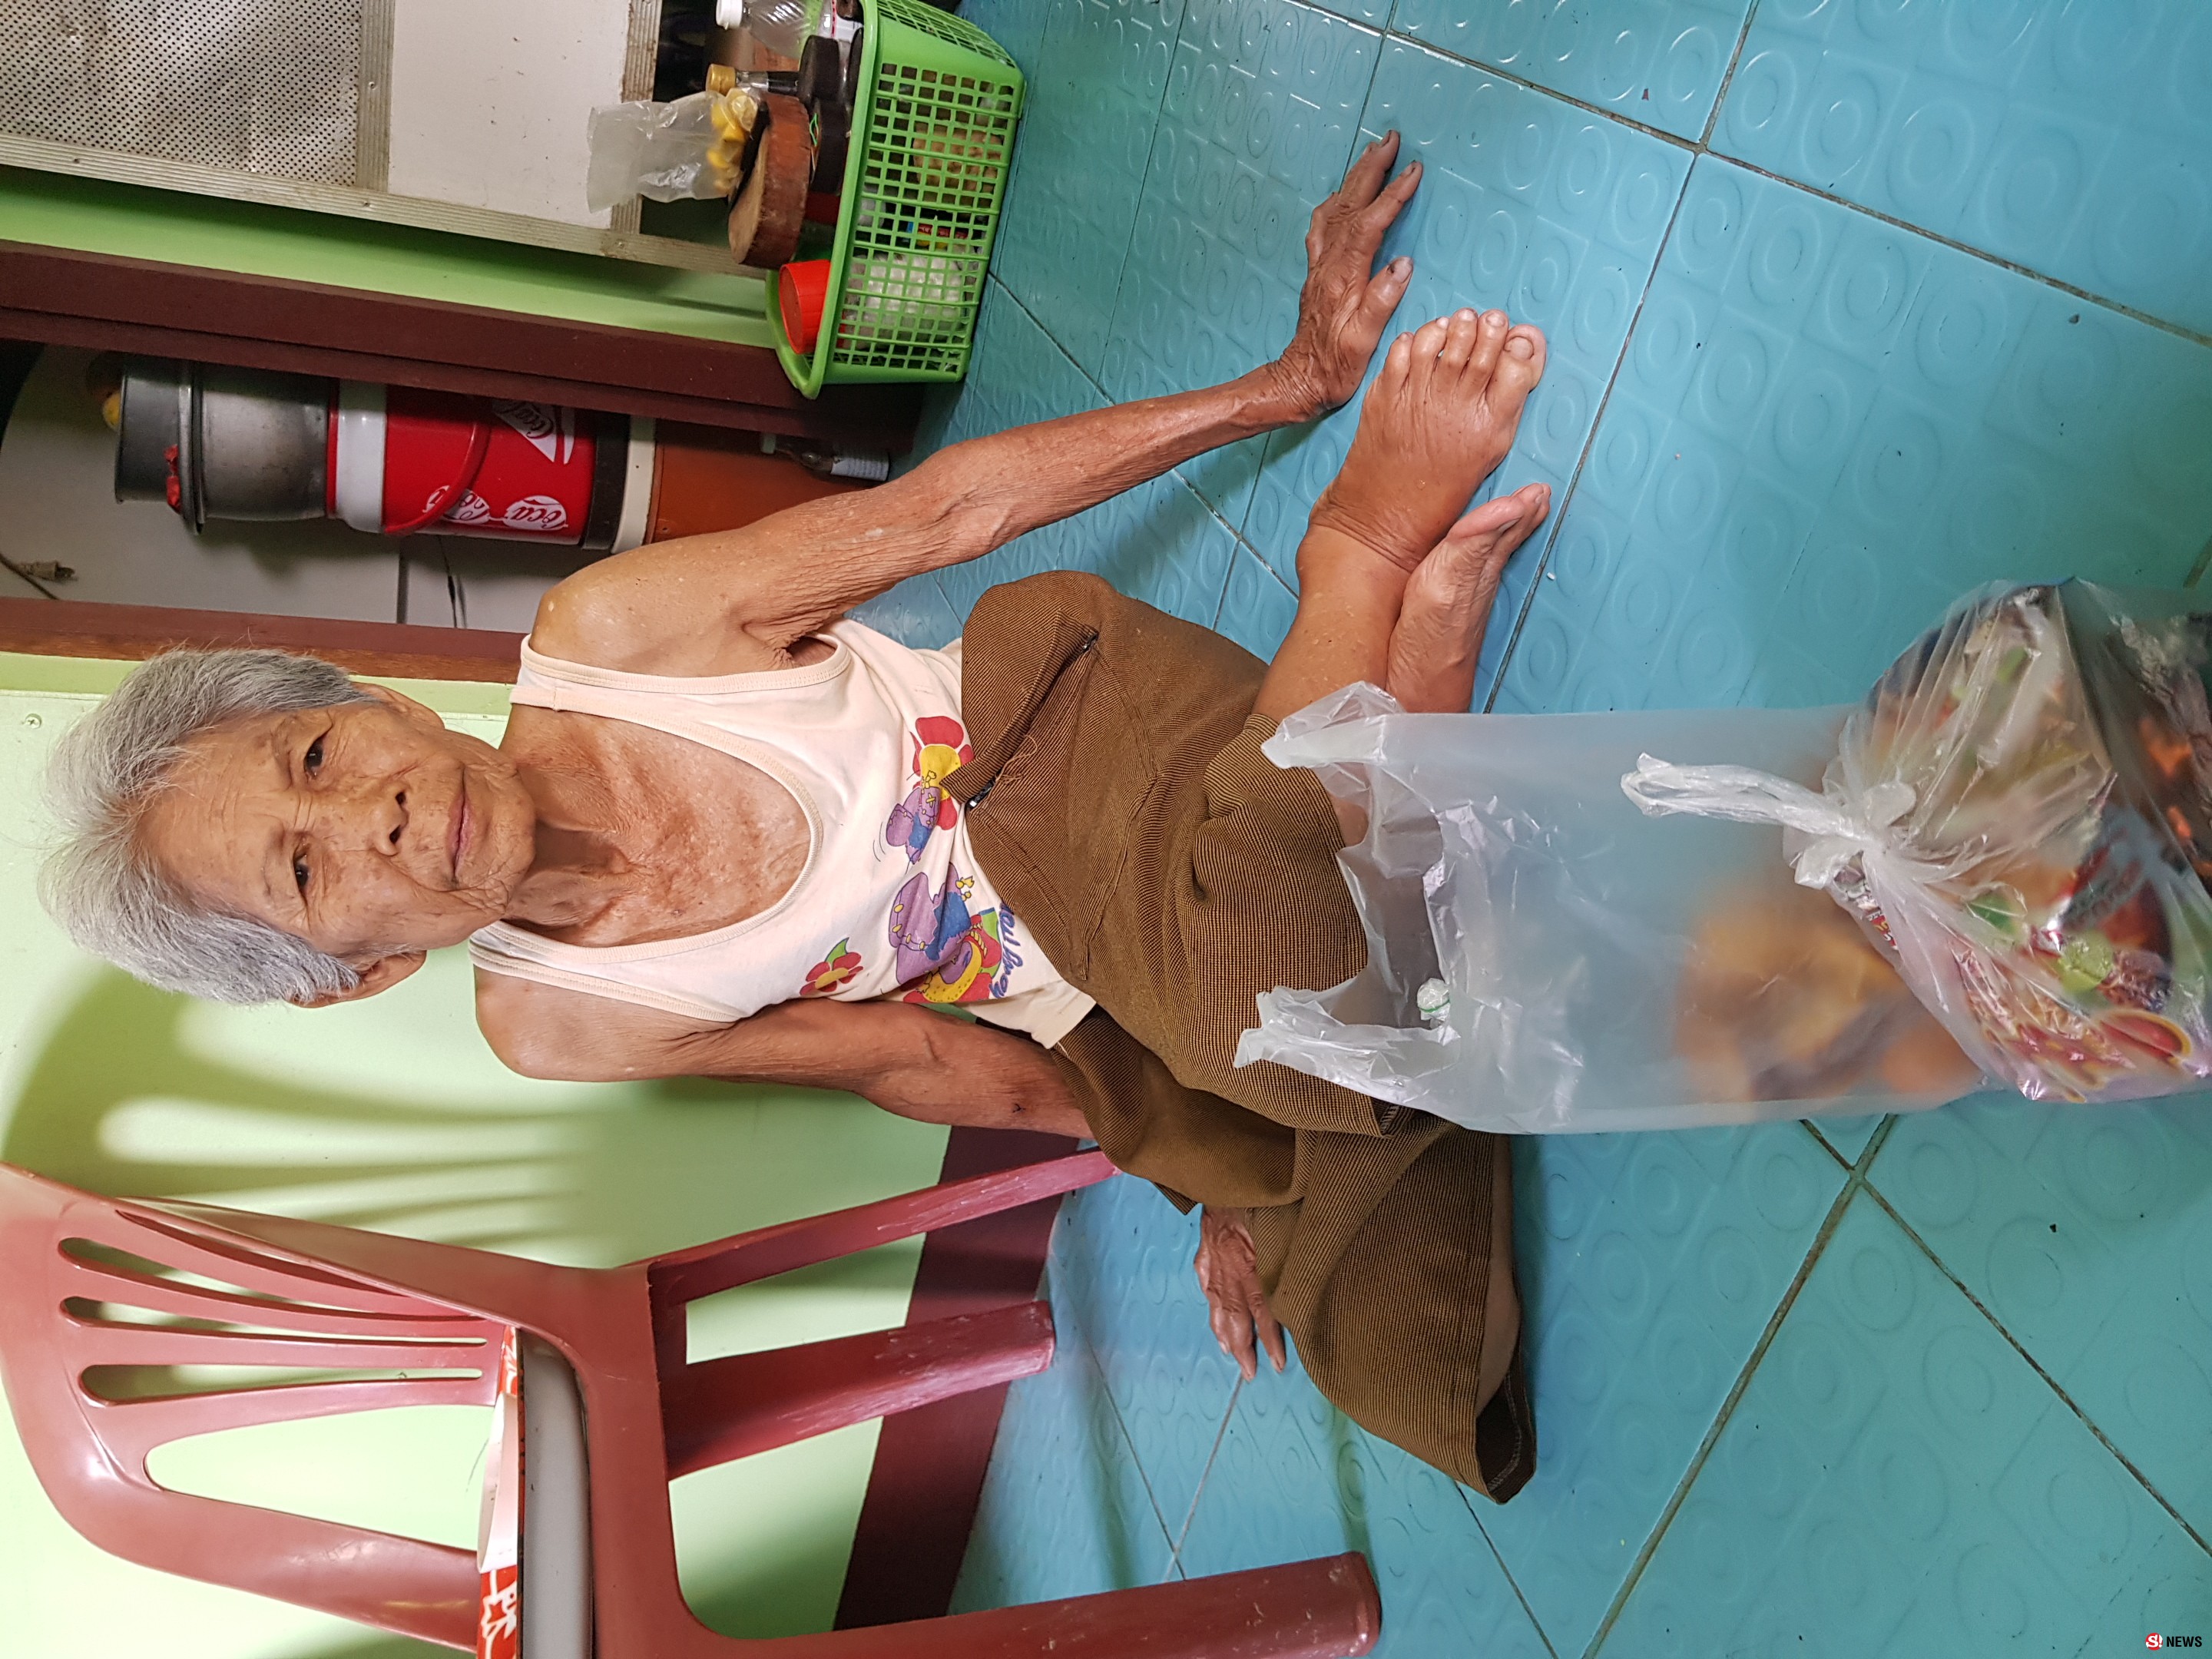 รักของแม่ แม่วัย 78 ปี ช่วยลูกพิการ 54 ปี นอนถักสายน้ำเกลือขายไม่ได้แล้ว